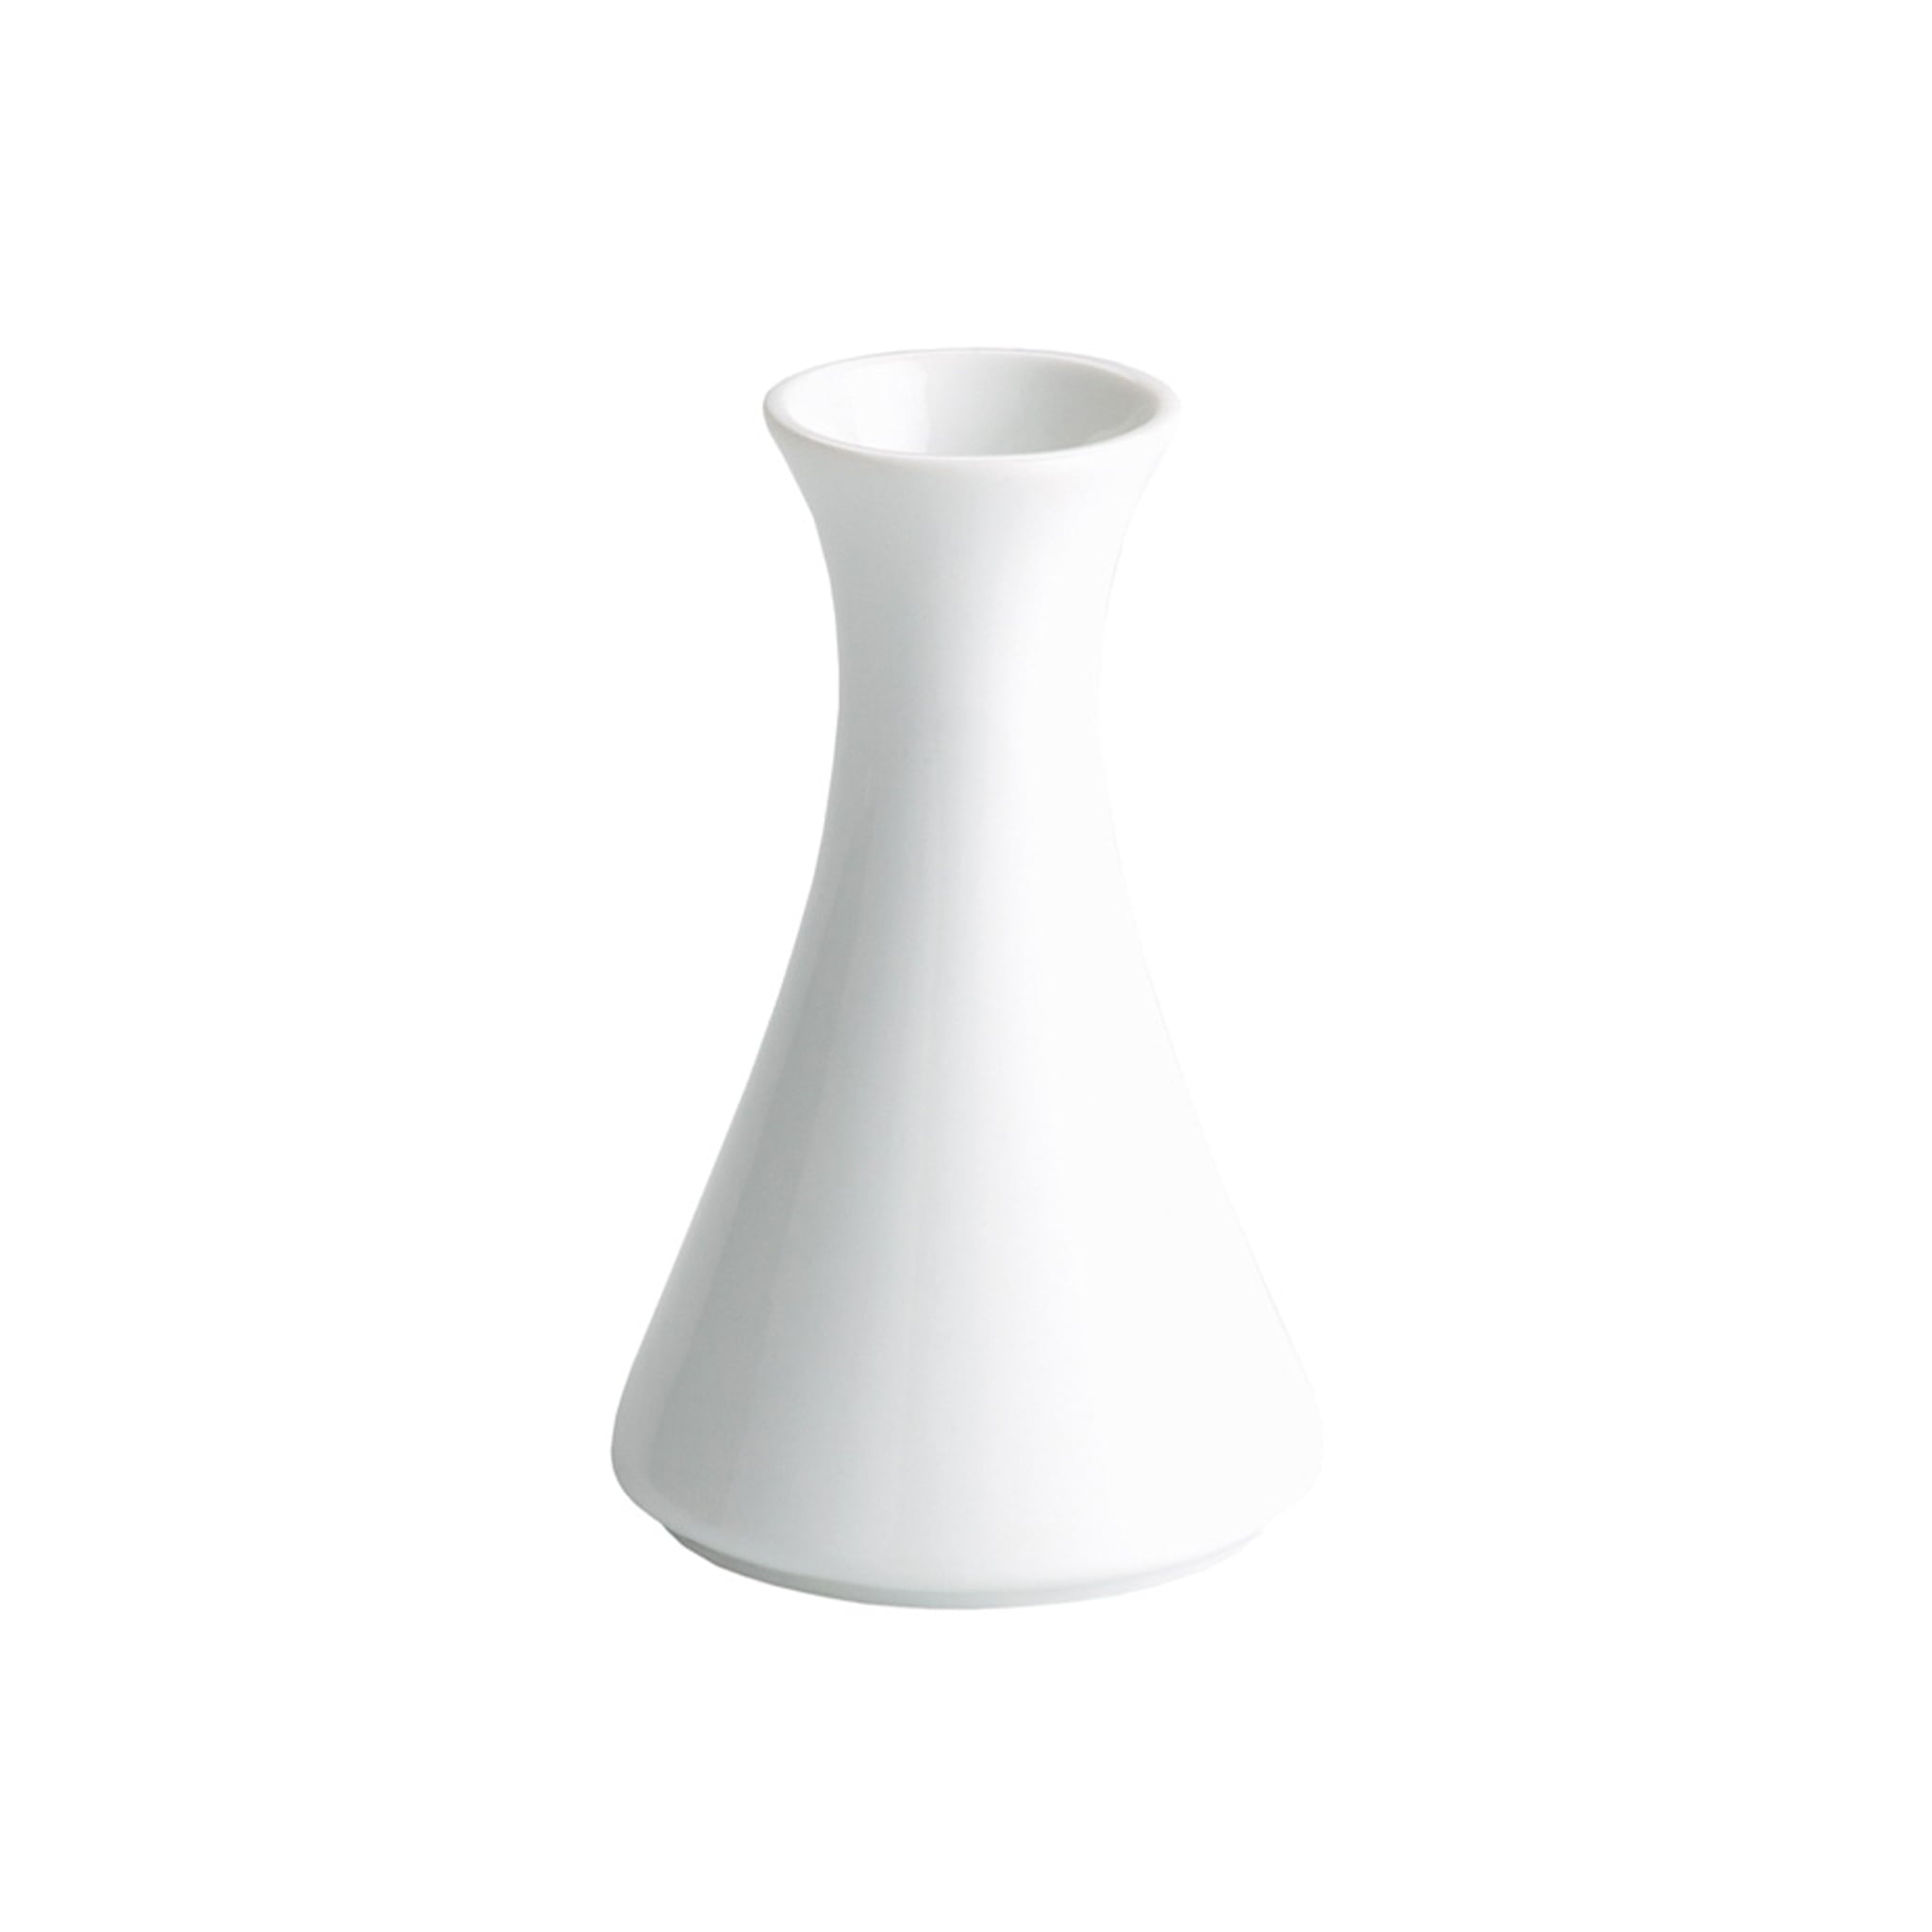 White Porcelain Vase, 13cm